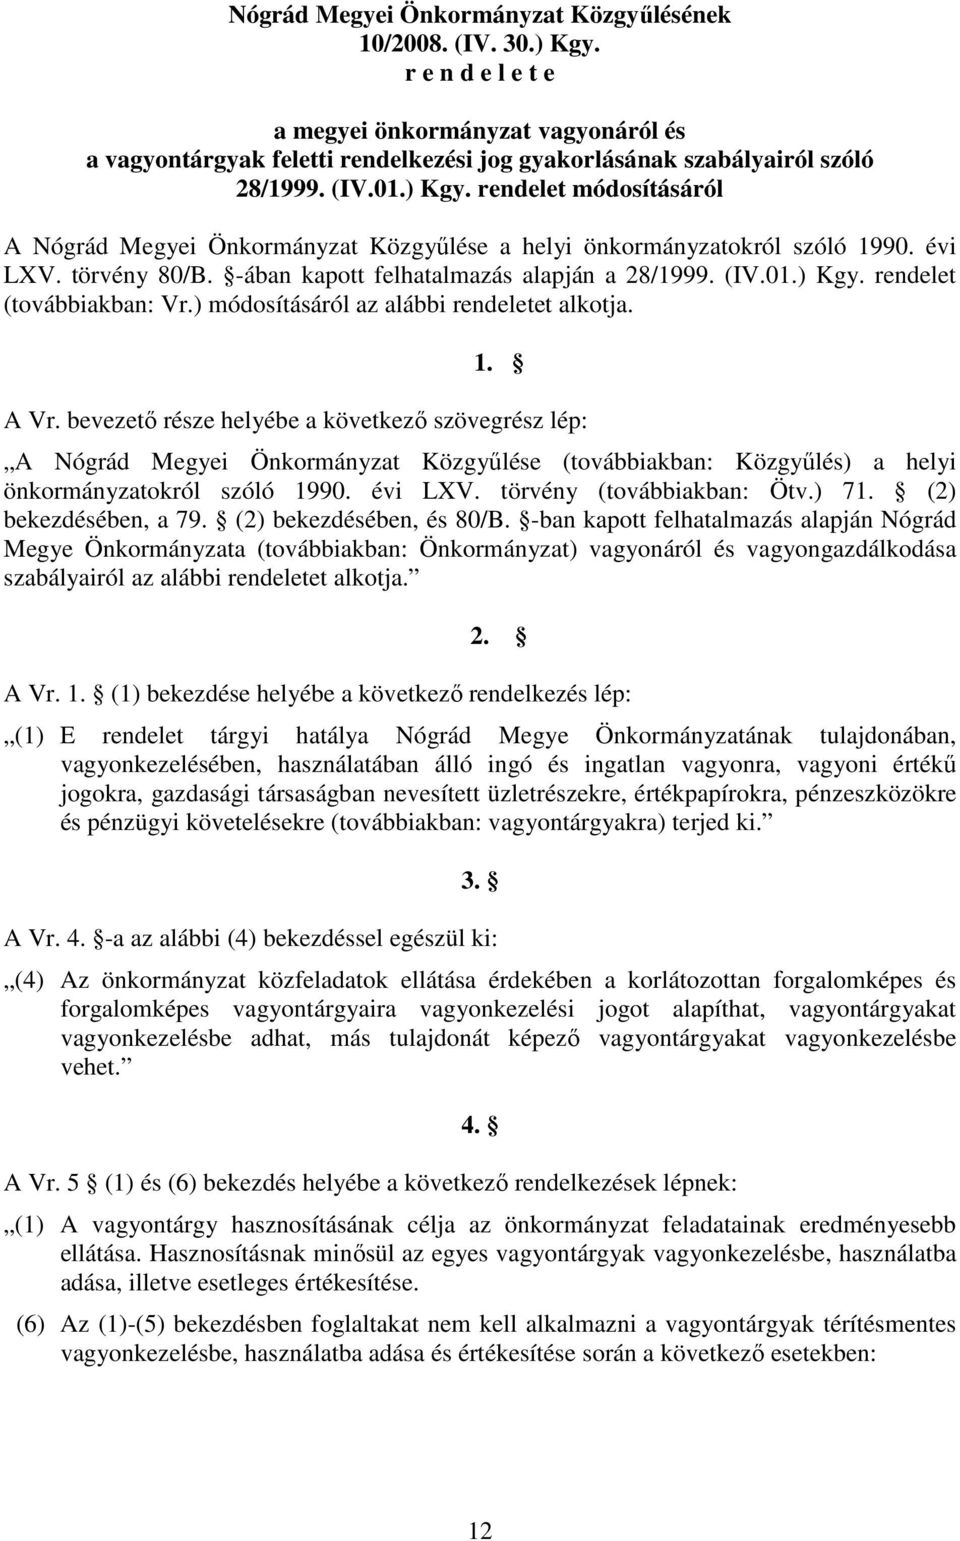 rendelet módosításáról A Nógrád Megyei Önkormányzat Közgyőlése a helyi önkormányzatokról szóló 1990. évi LXV. törvény 80/B. -ában kapott felhatalmazás alapján a 28/1999. (IV.01.) Kgy.